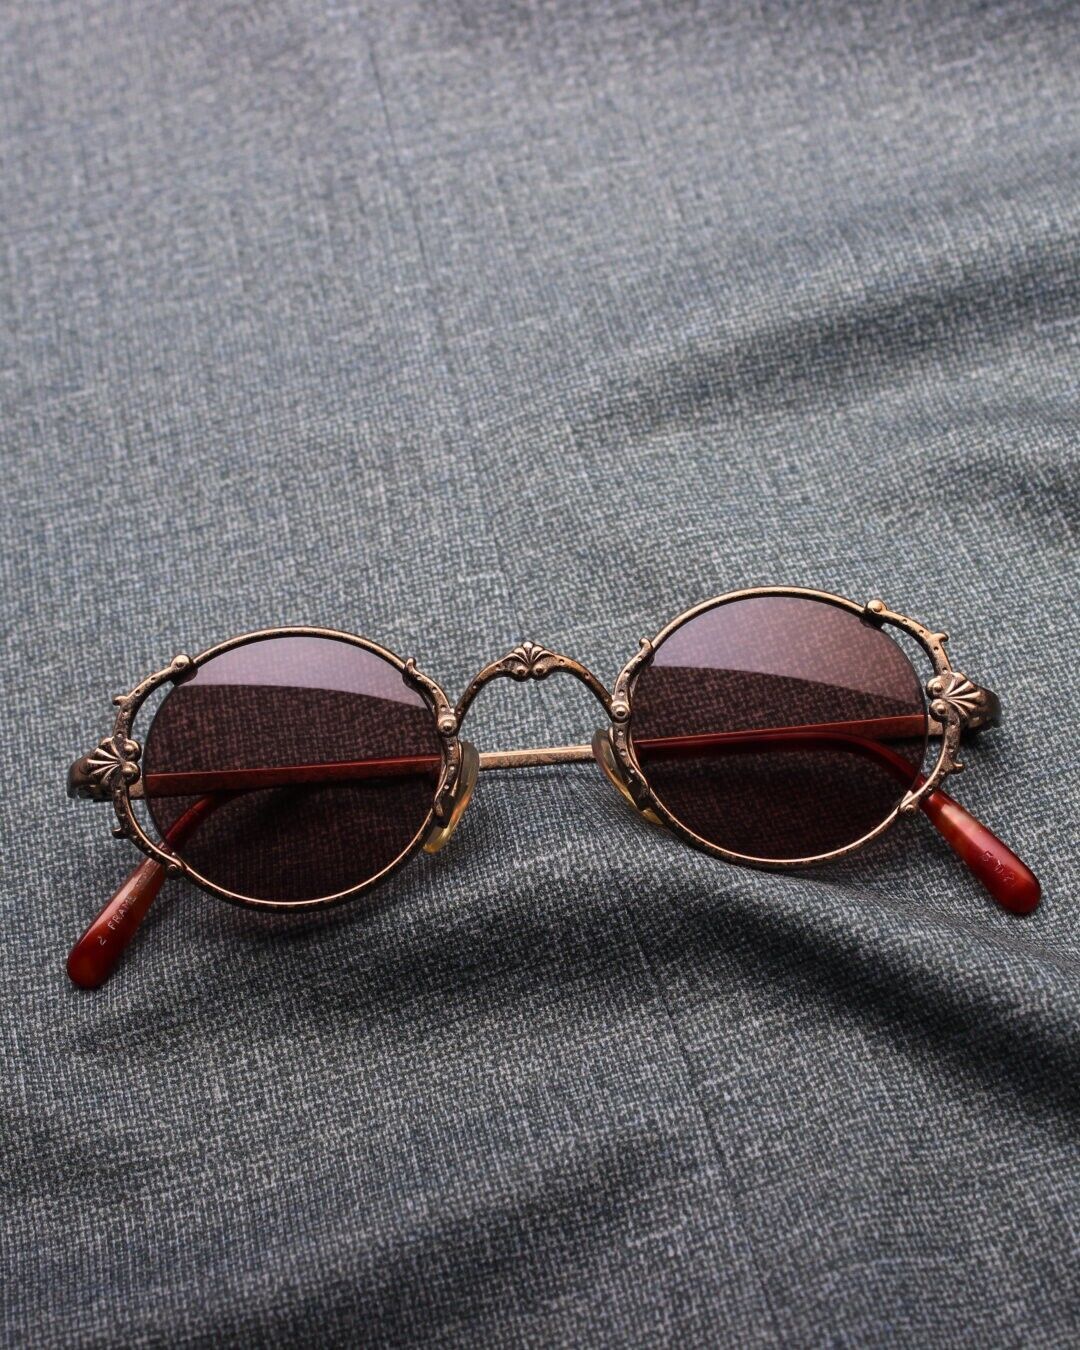 Купить Chanel 4005 62mm Rimless Vintage Sunglasses Black Purple Made  (Солнцезащитные очки) заказать с доставкой лот № 151961101647